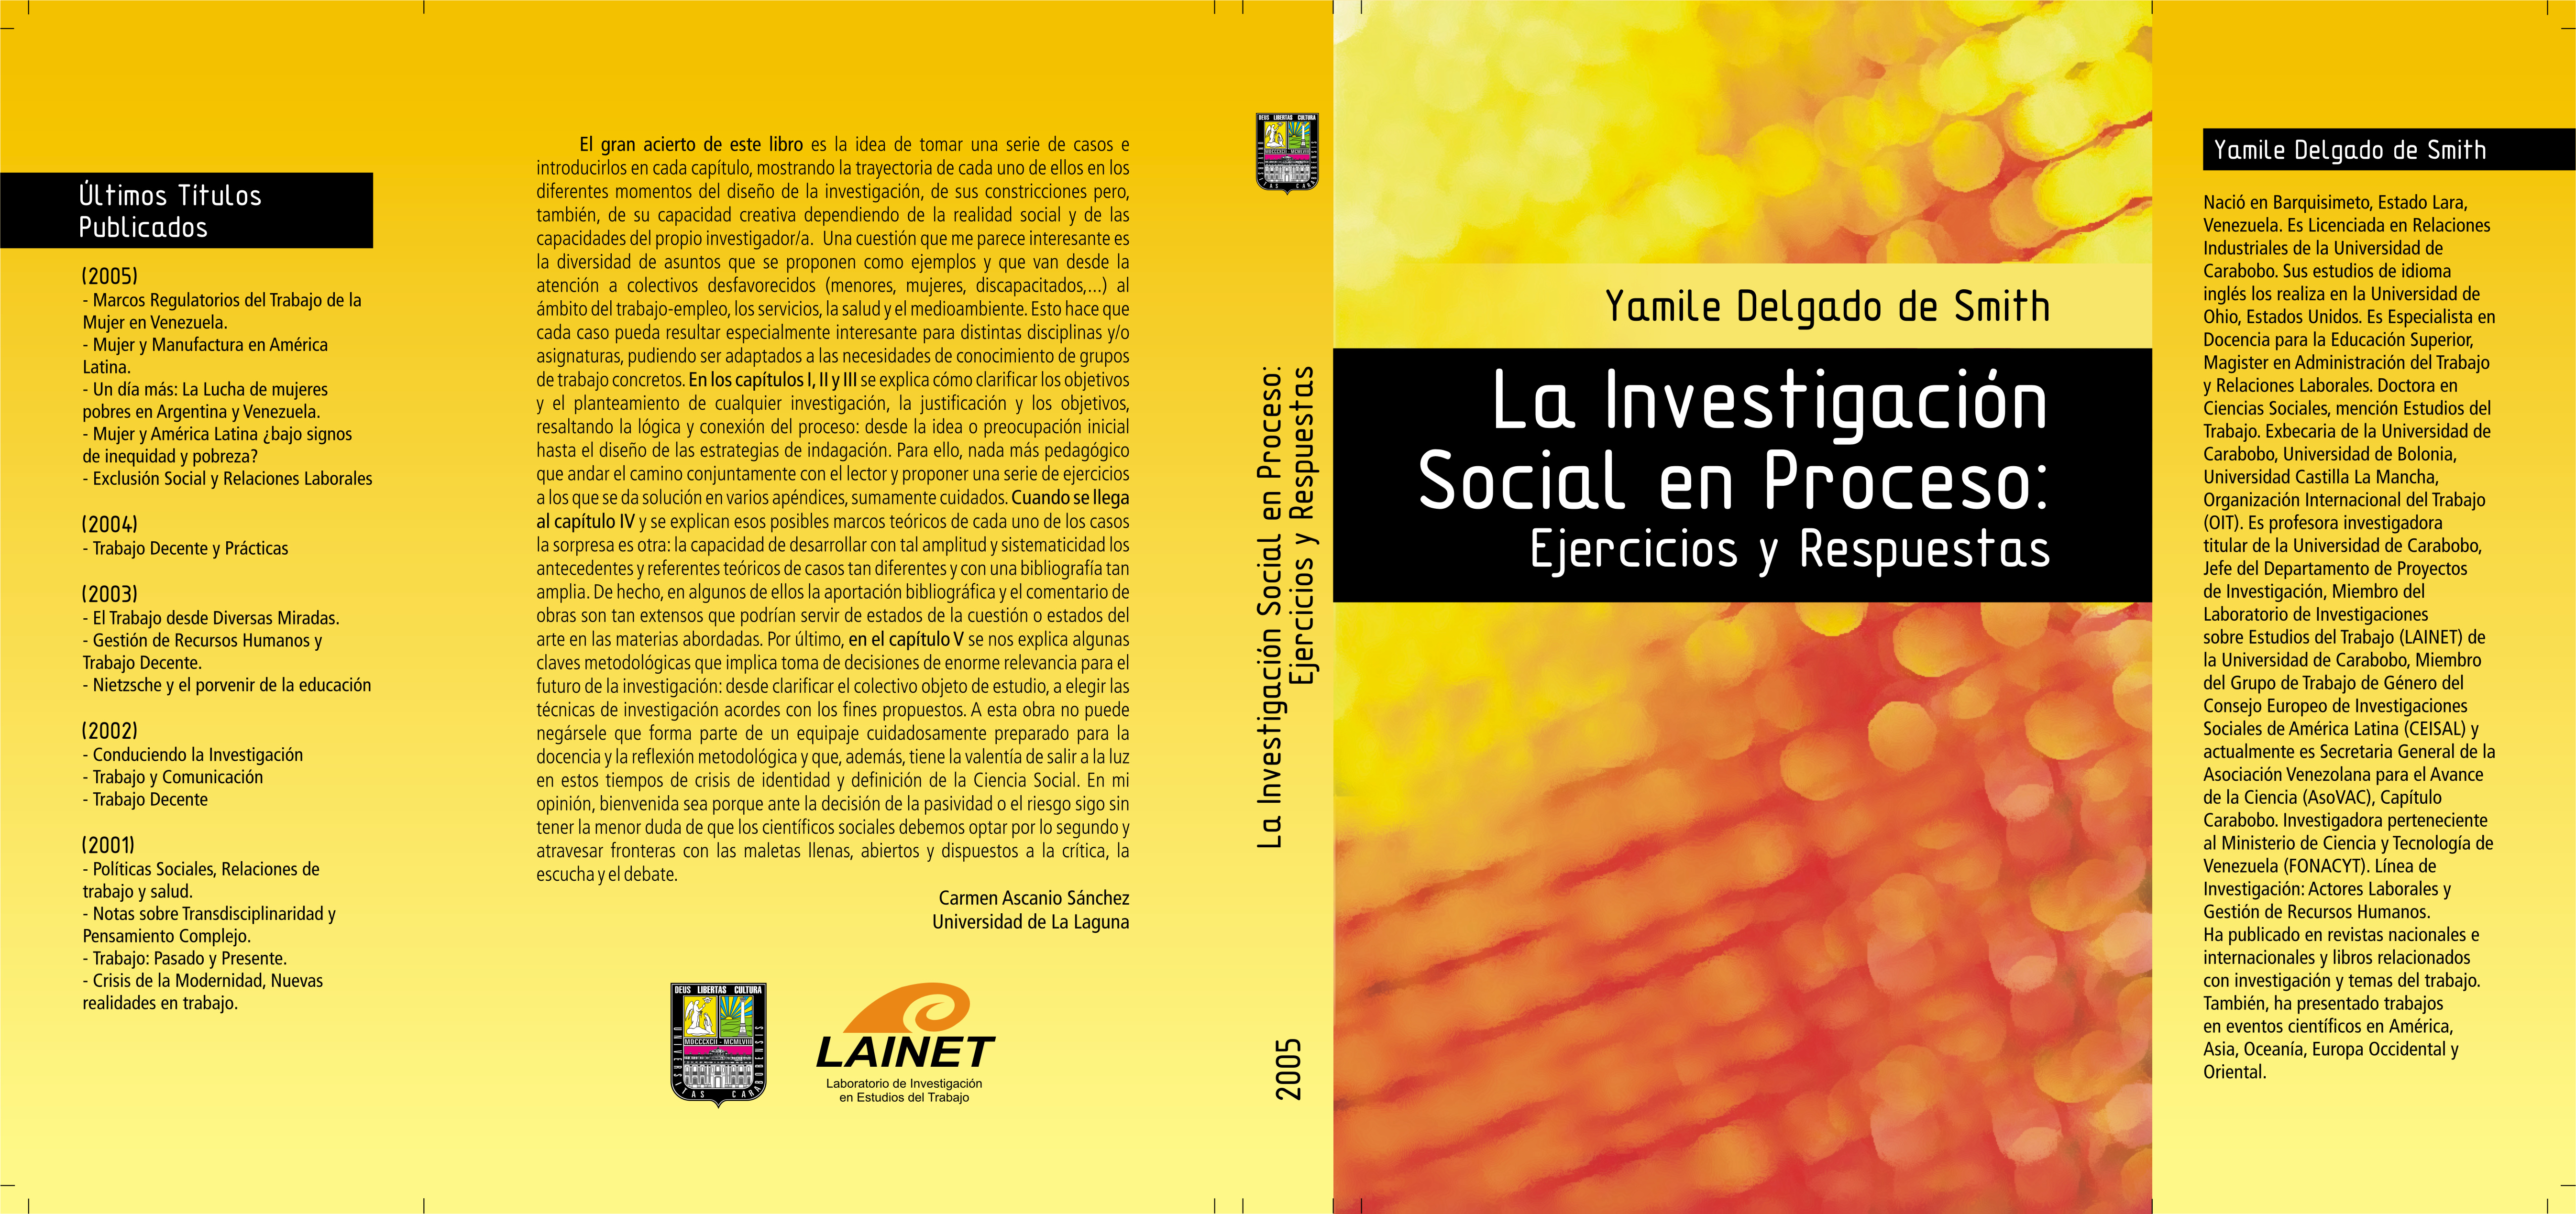 La investigación social en procesos (2005)